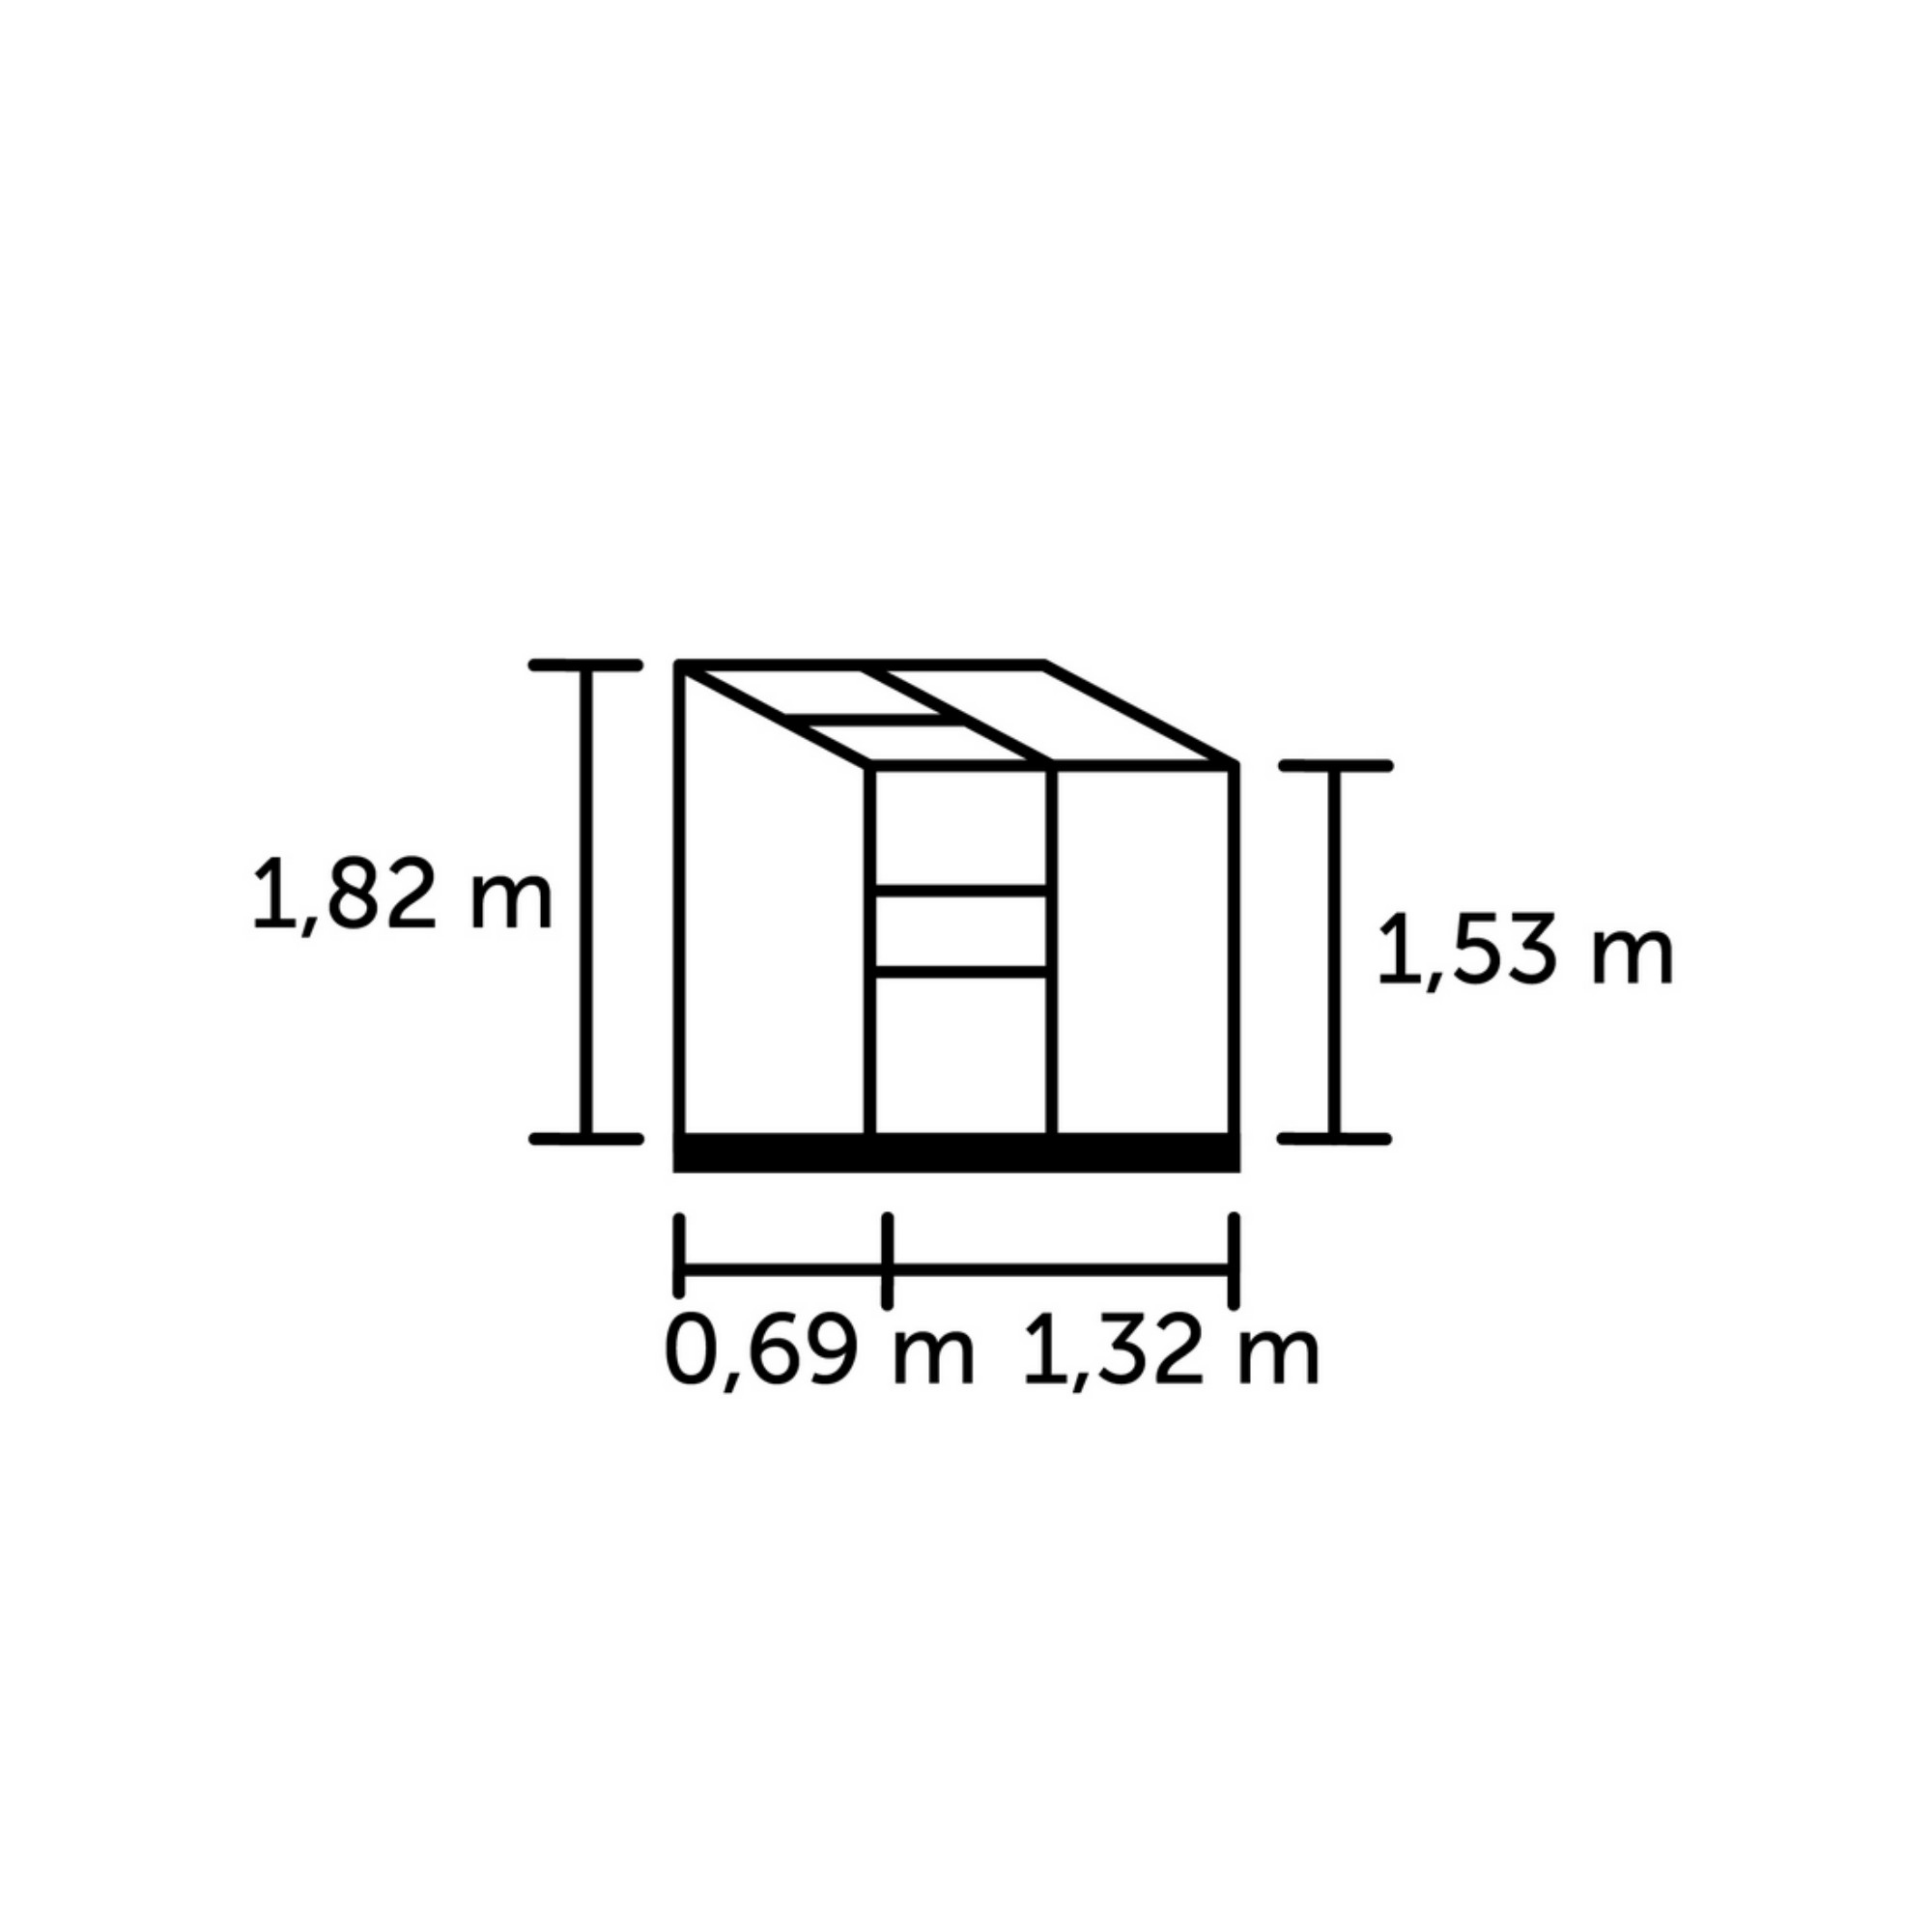 Anlehngewächshaus 'Altan 2' 0,91 m² 69 x 132 cm 4 mm Doppelstegplatten schwarz + product picture